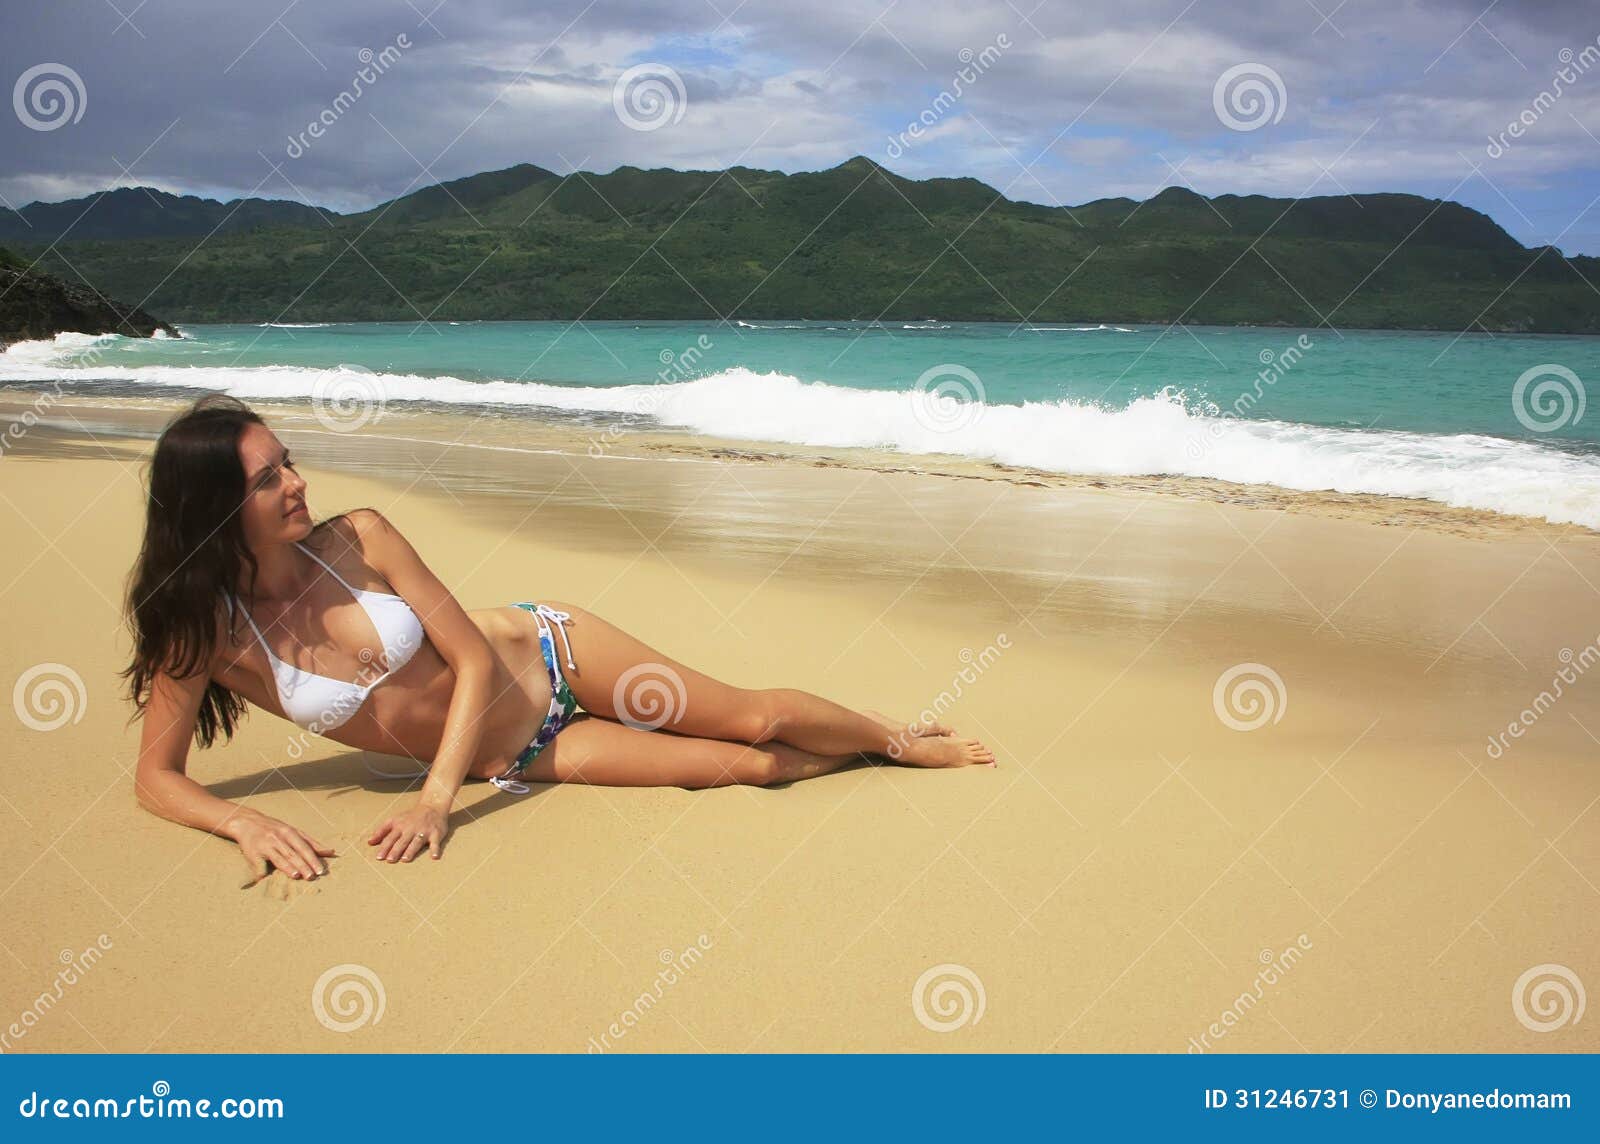 young woman in bikini laying at rincon beach, samana peninsula